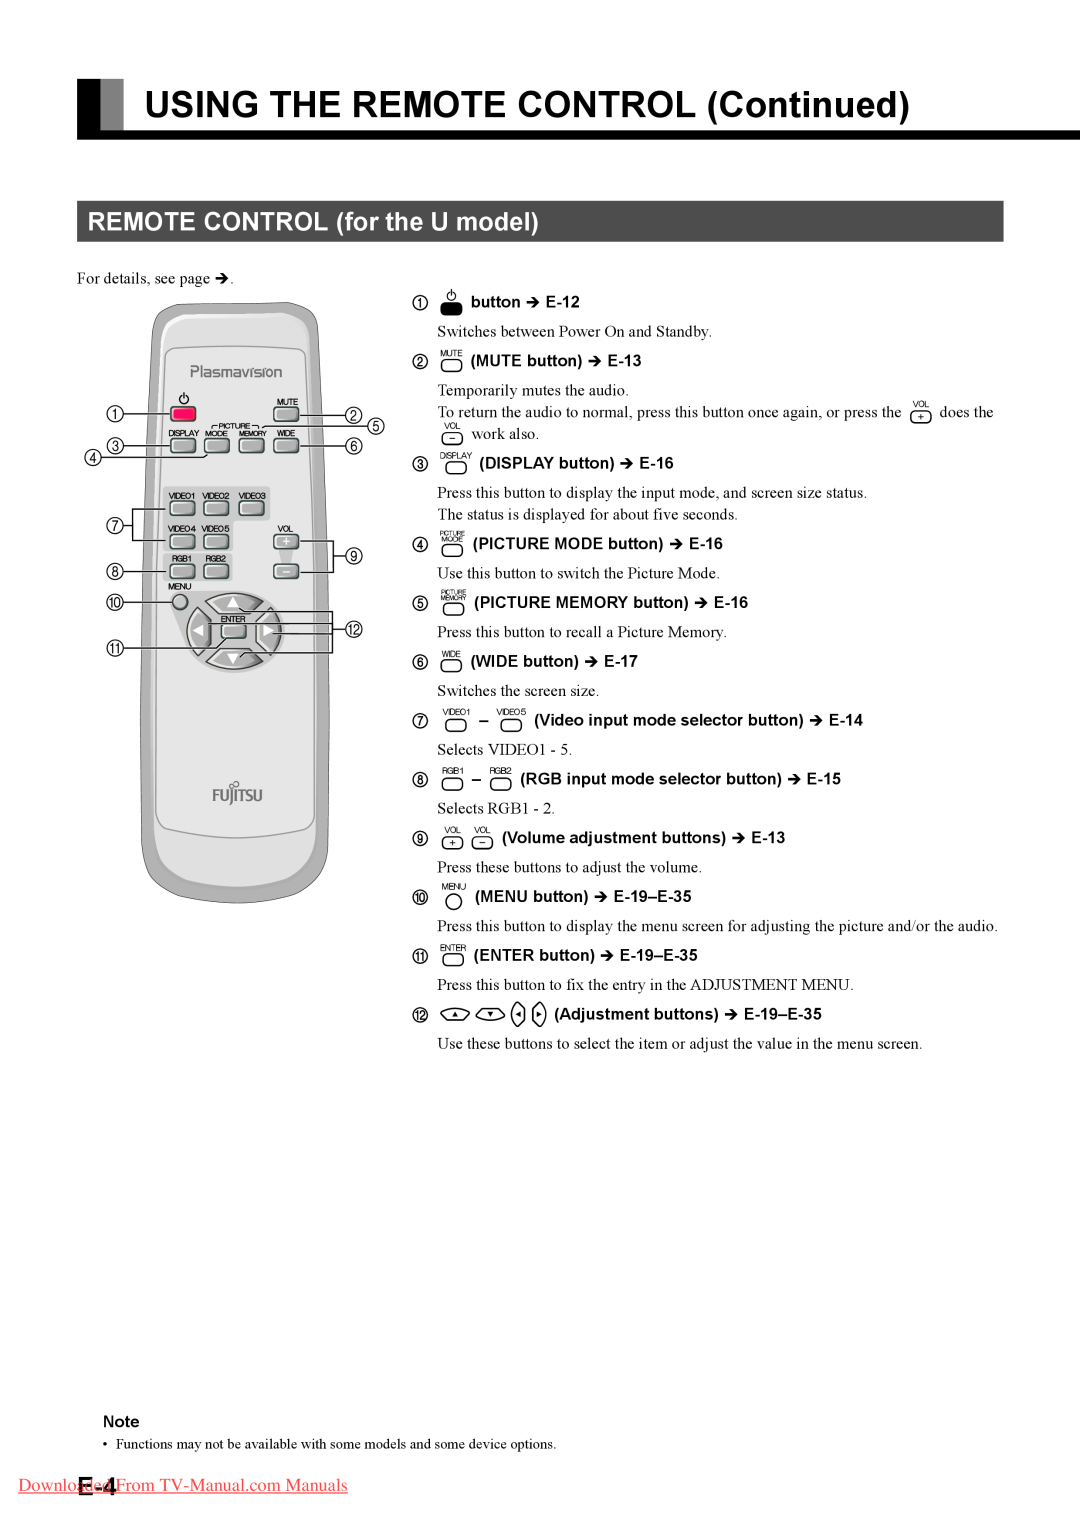 Fujitsu P42HHA40U, P42HHA40A, P42HHA40W, P63XHA40R USING THE REMOTE CONTROL Continued, REMOTE CONTROL for the U model 